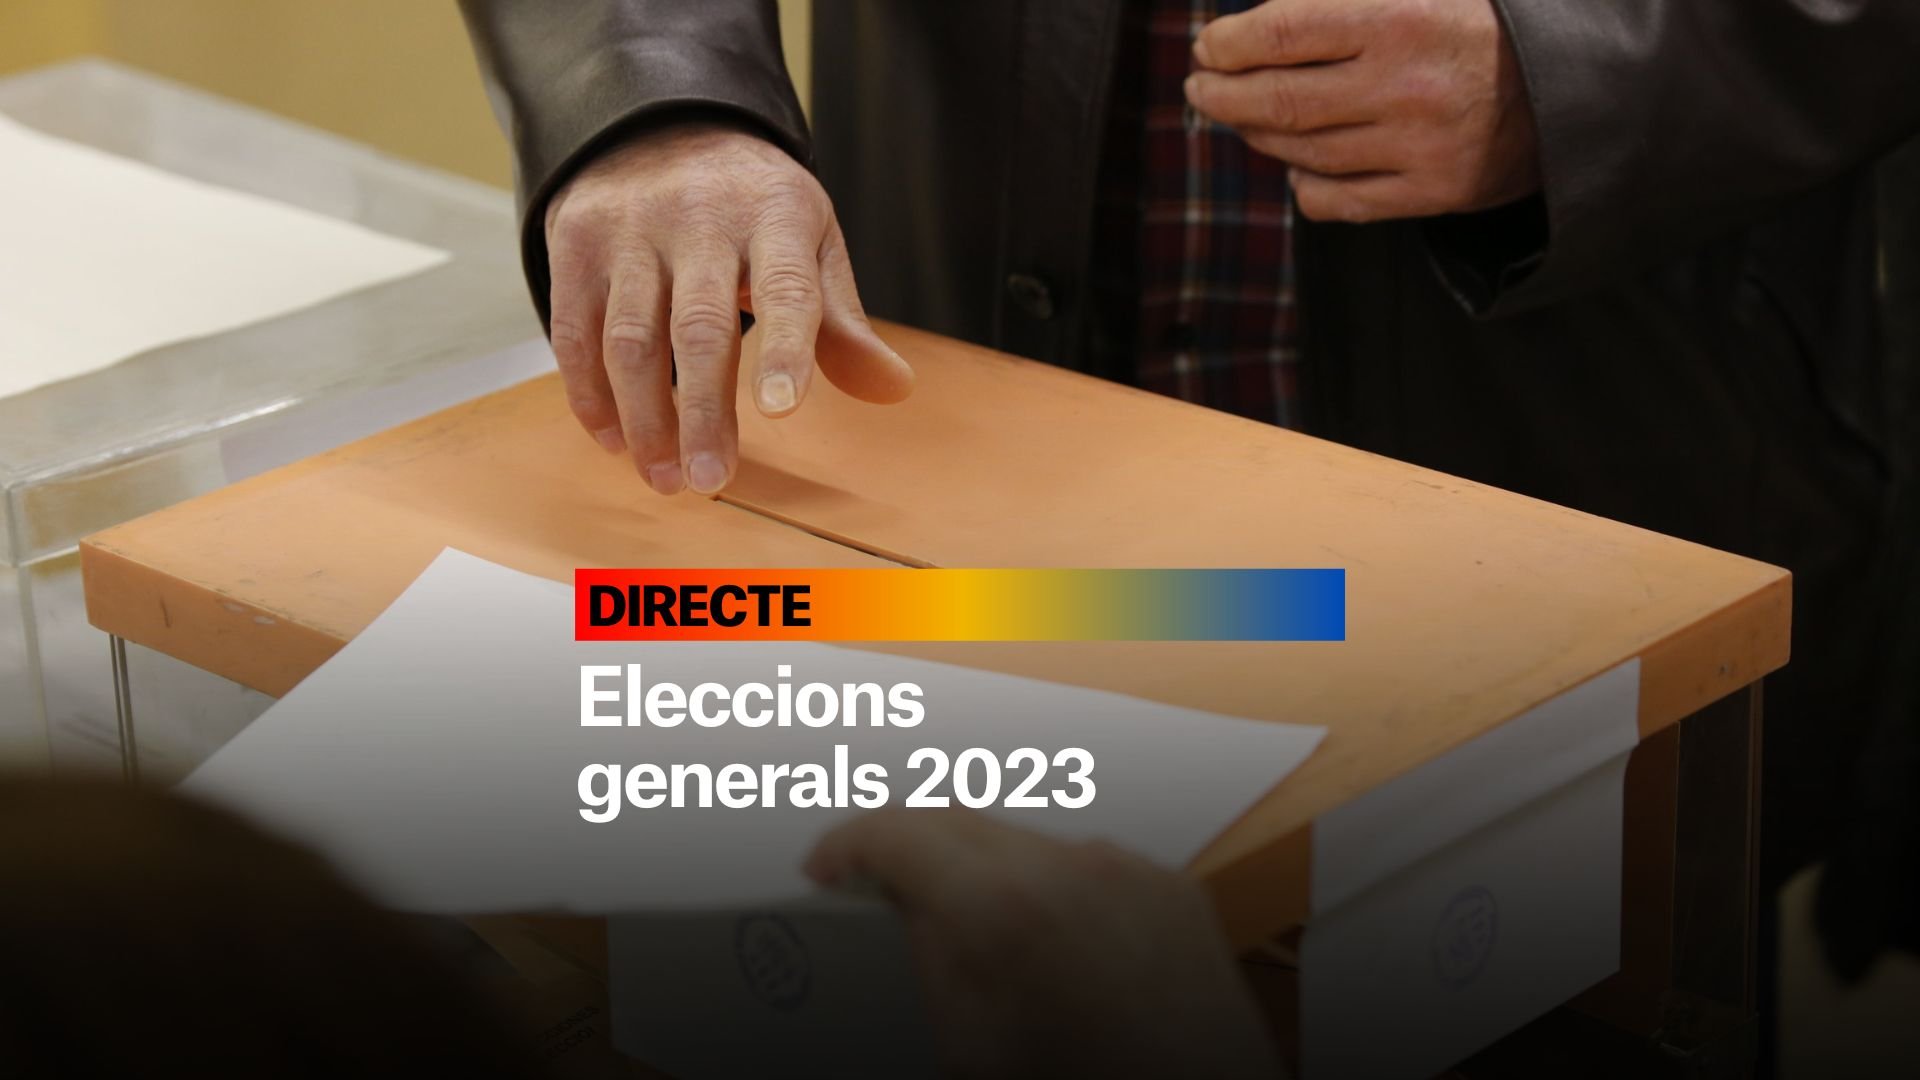 Eleccions generals 2023, DIRECTE | Últimes notícies del 7 de juliol